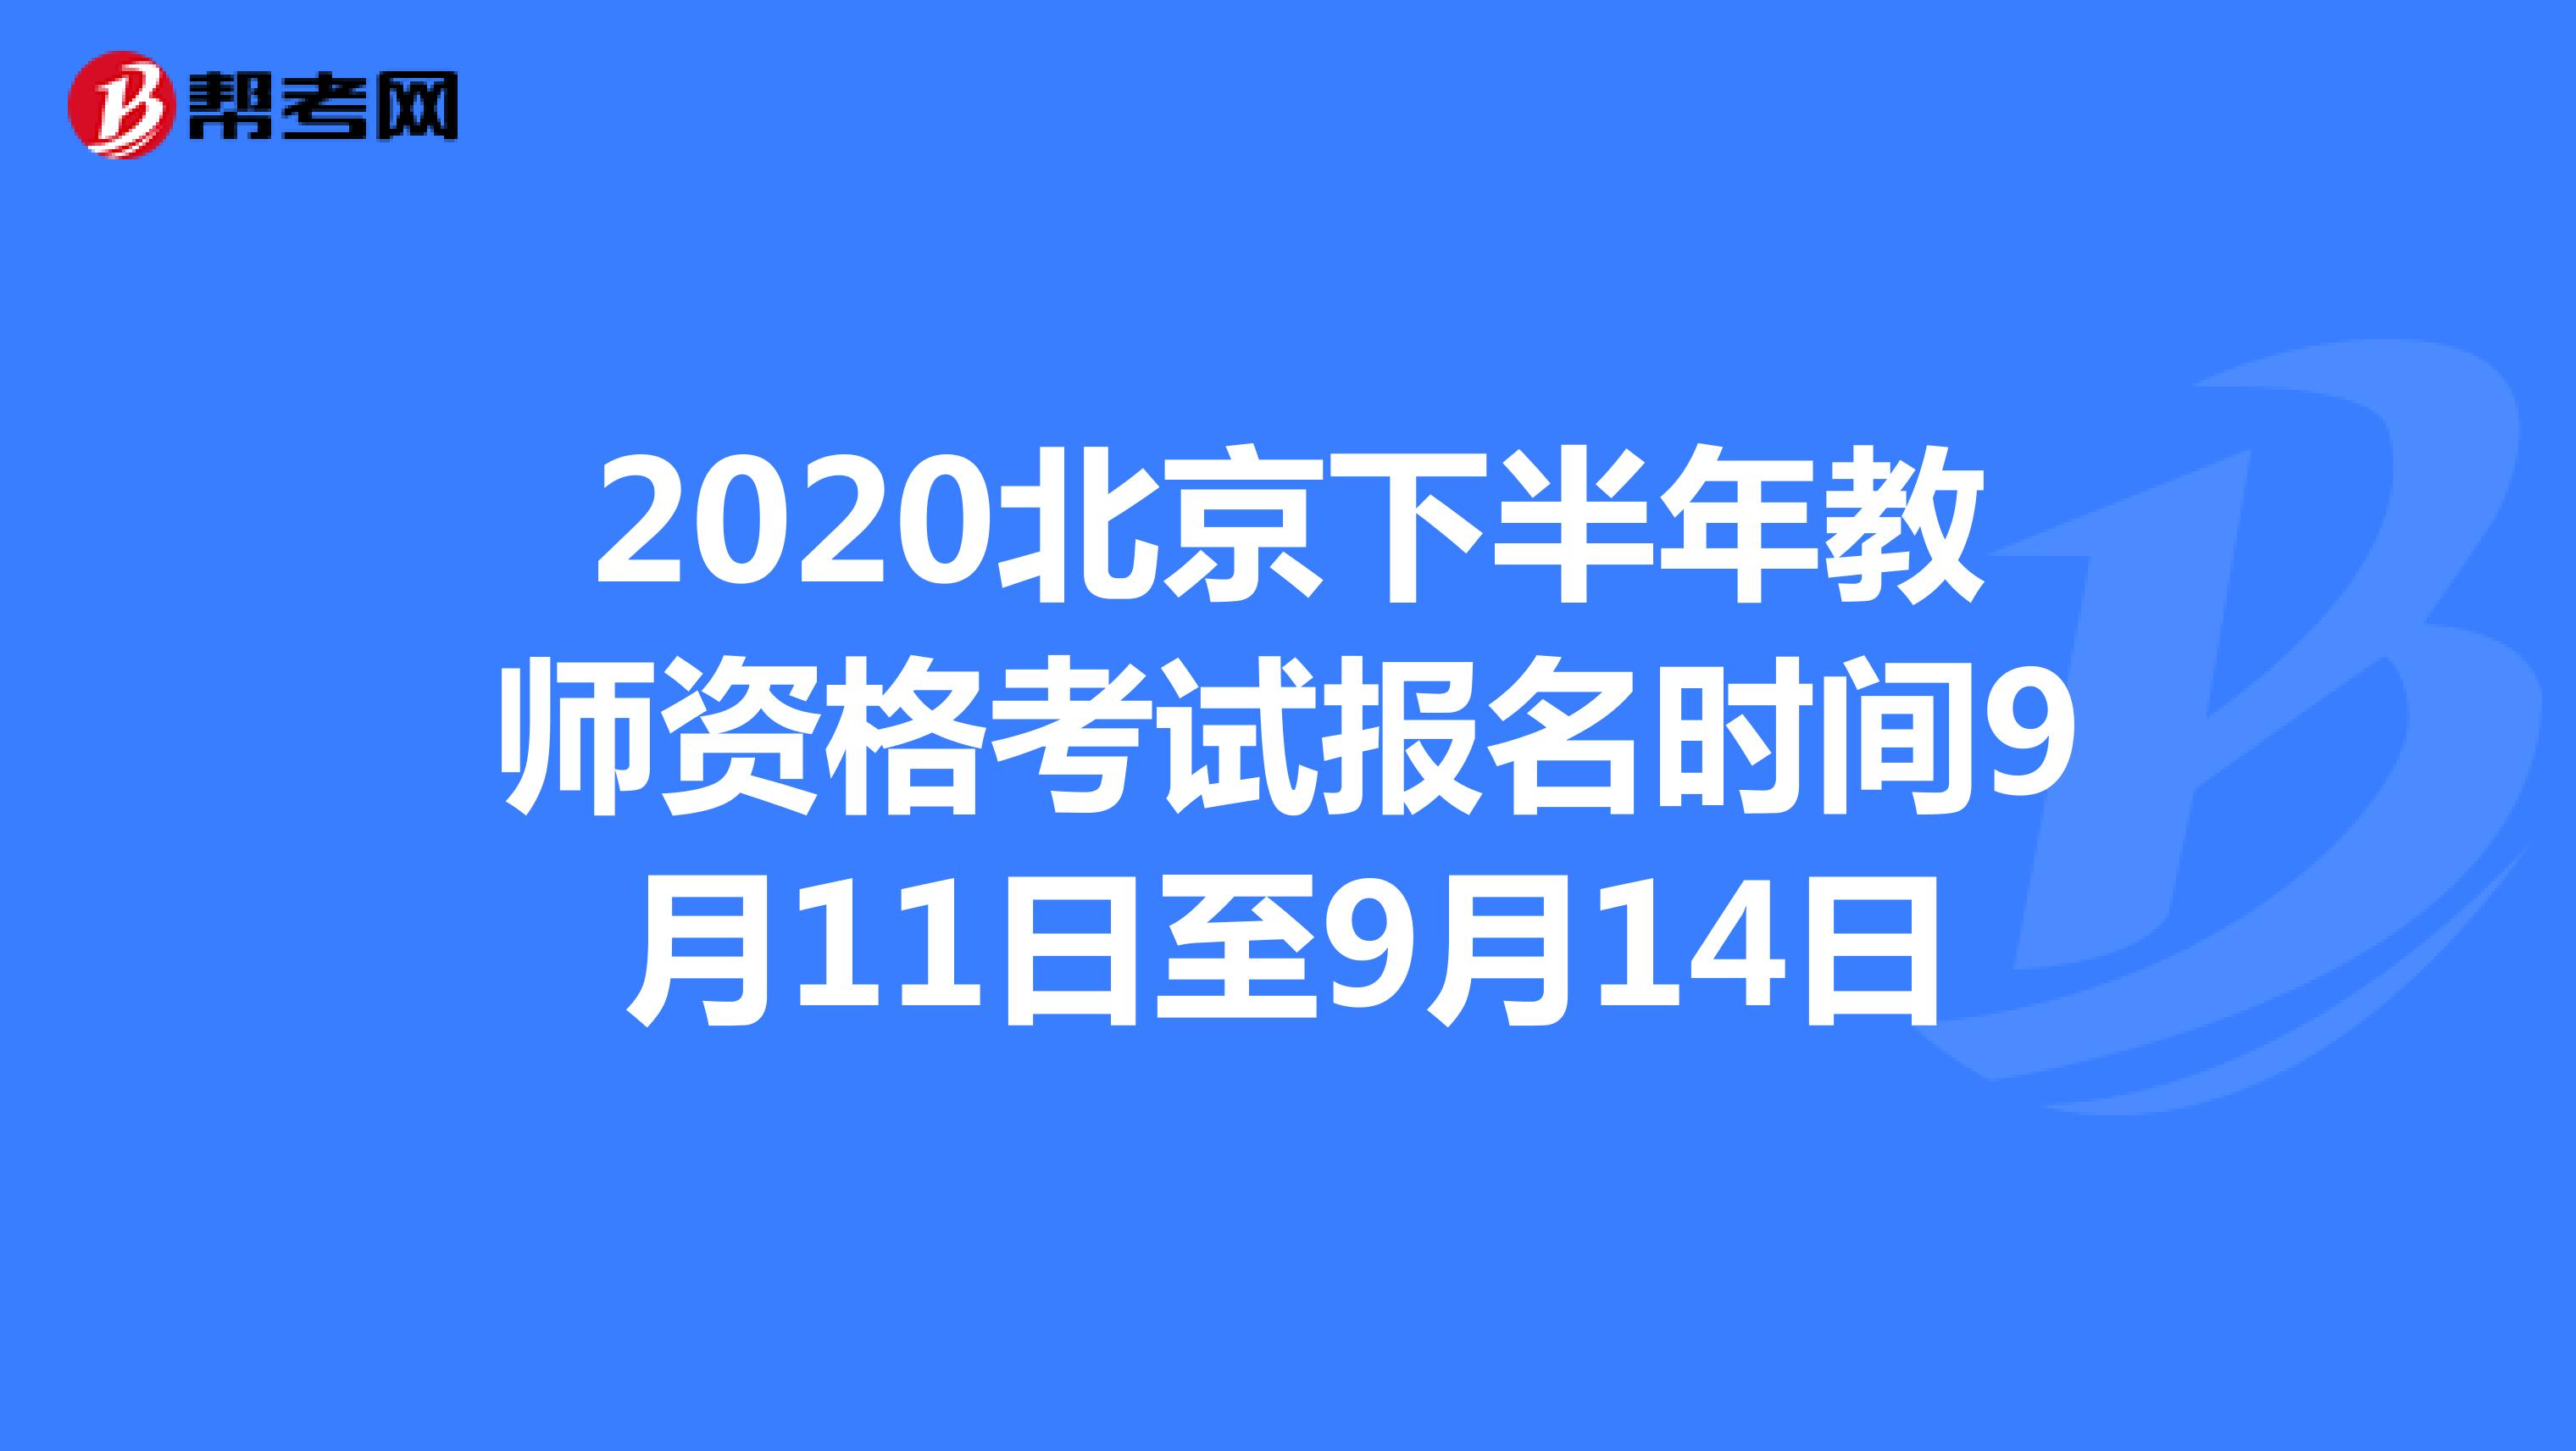 2020北京下半年教师资格考试报名时间9月11日至9月14日